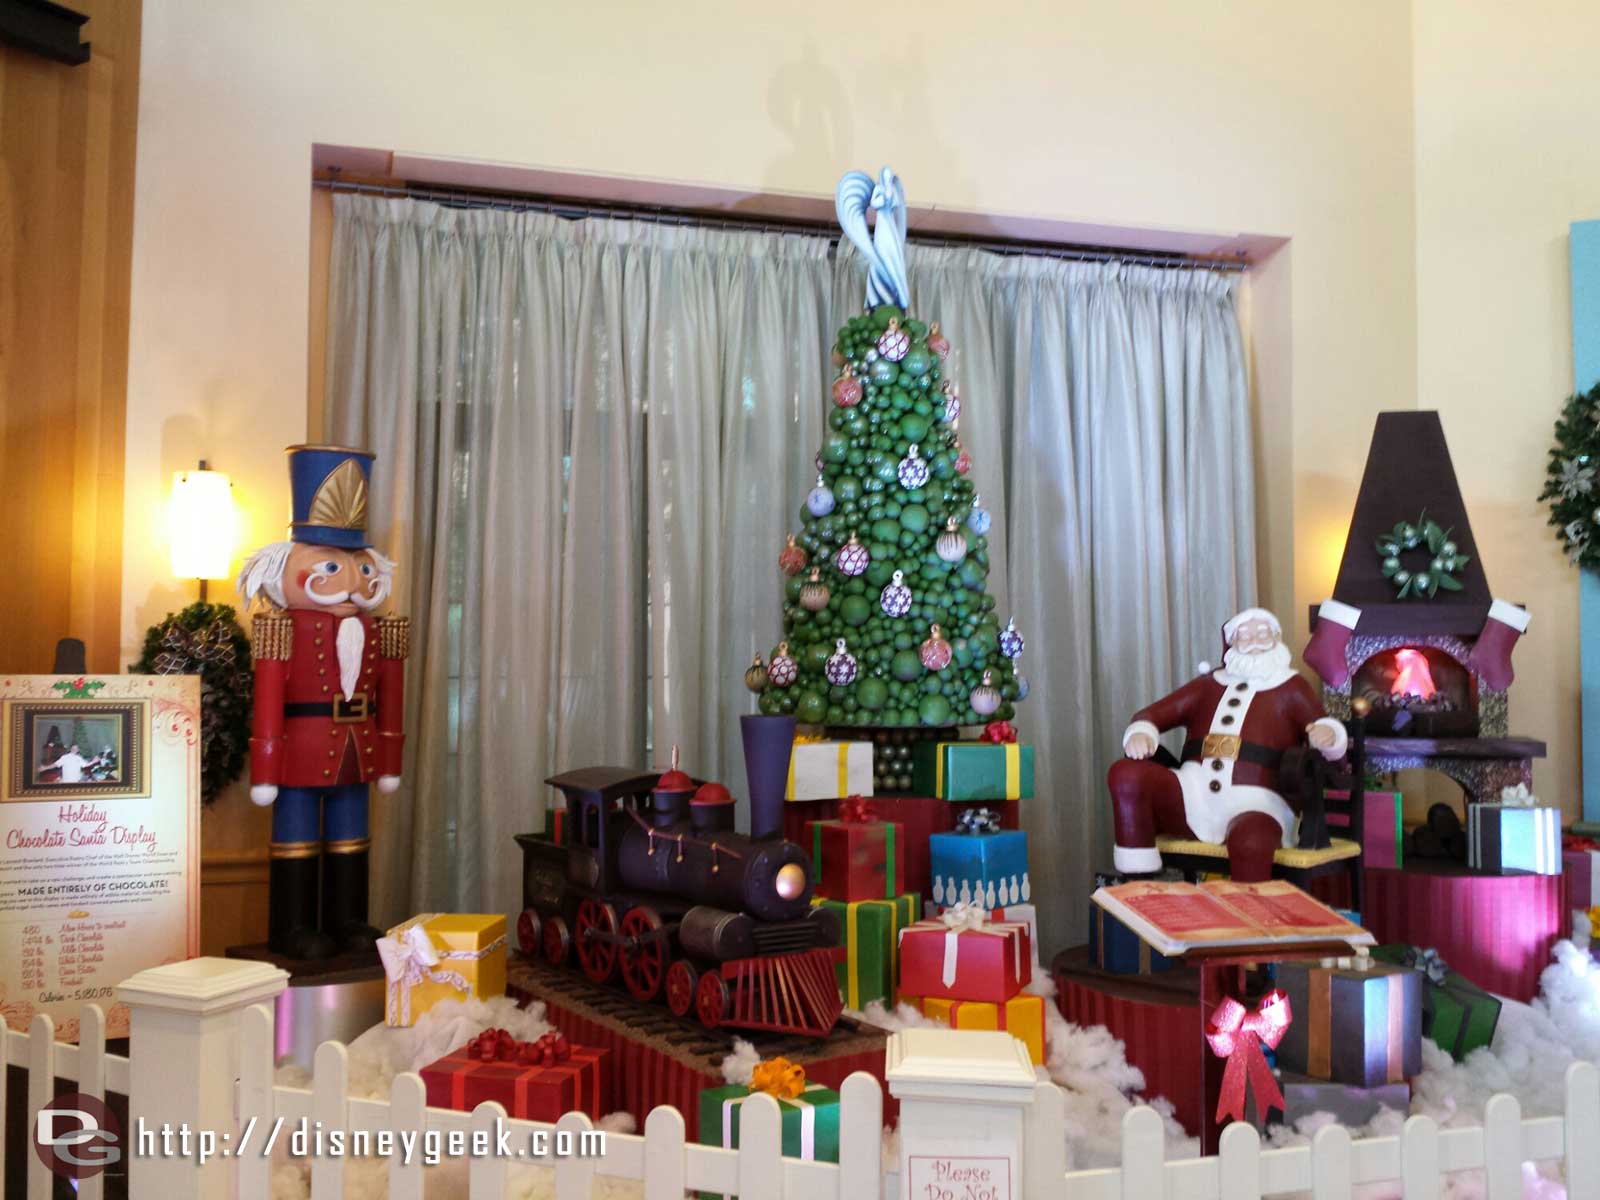 The Holiday Chocolate Santa Display at the Swan hotel.